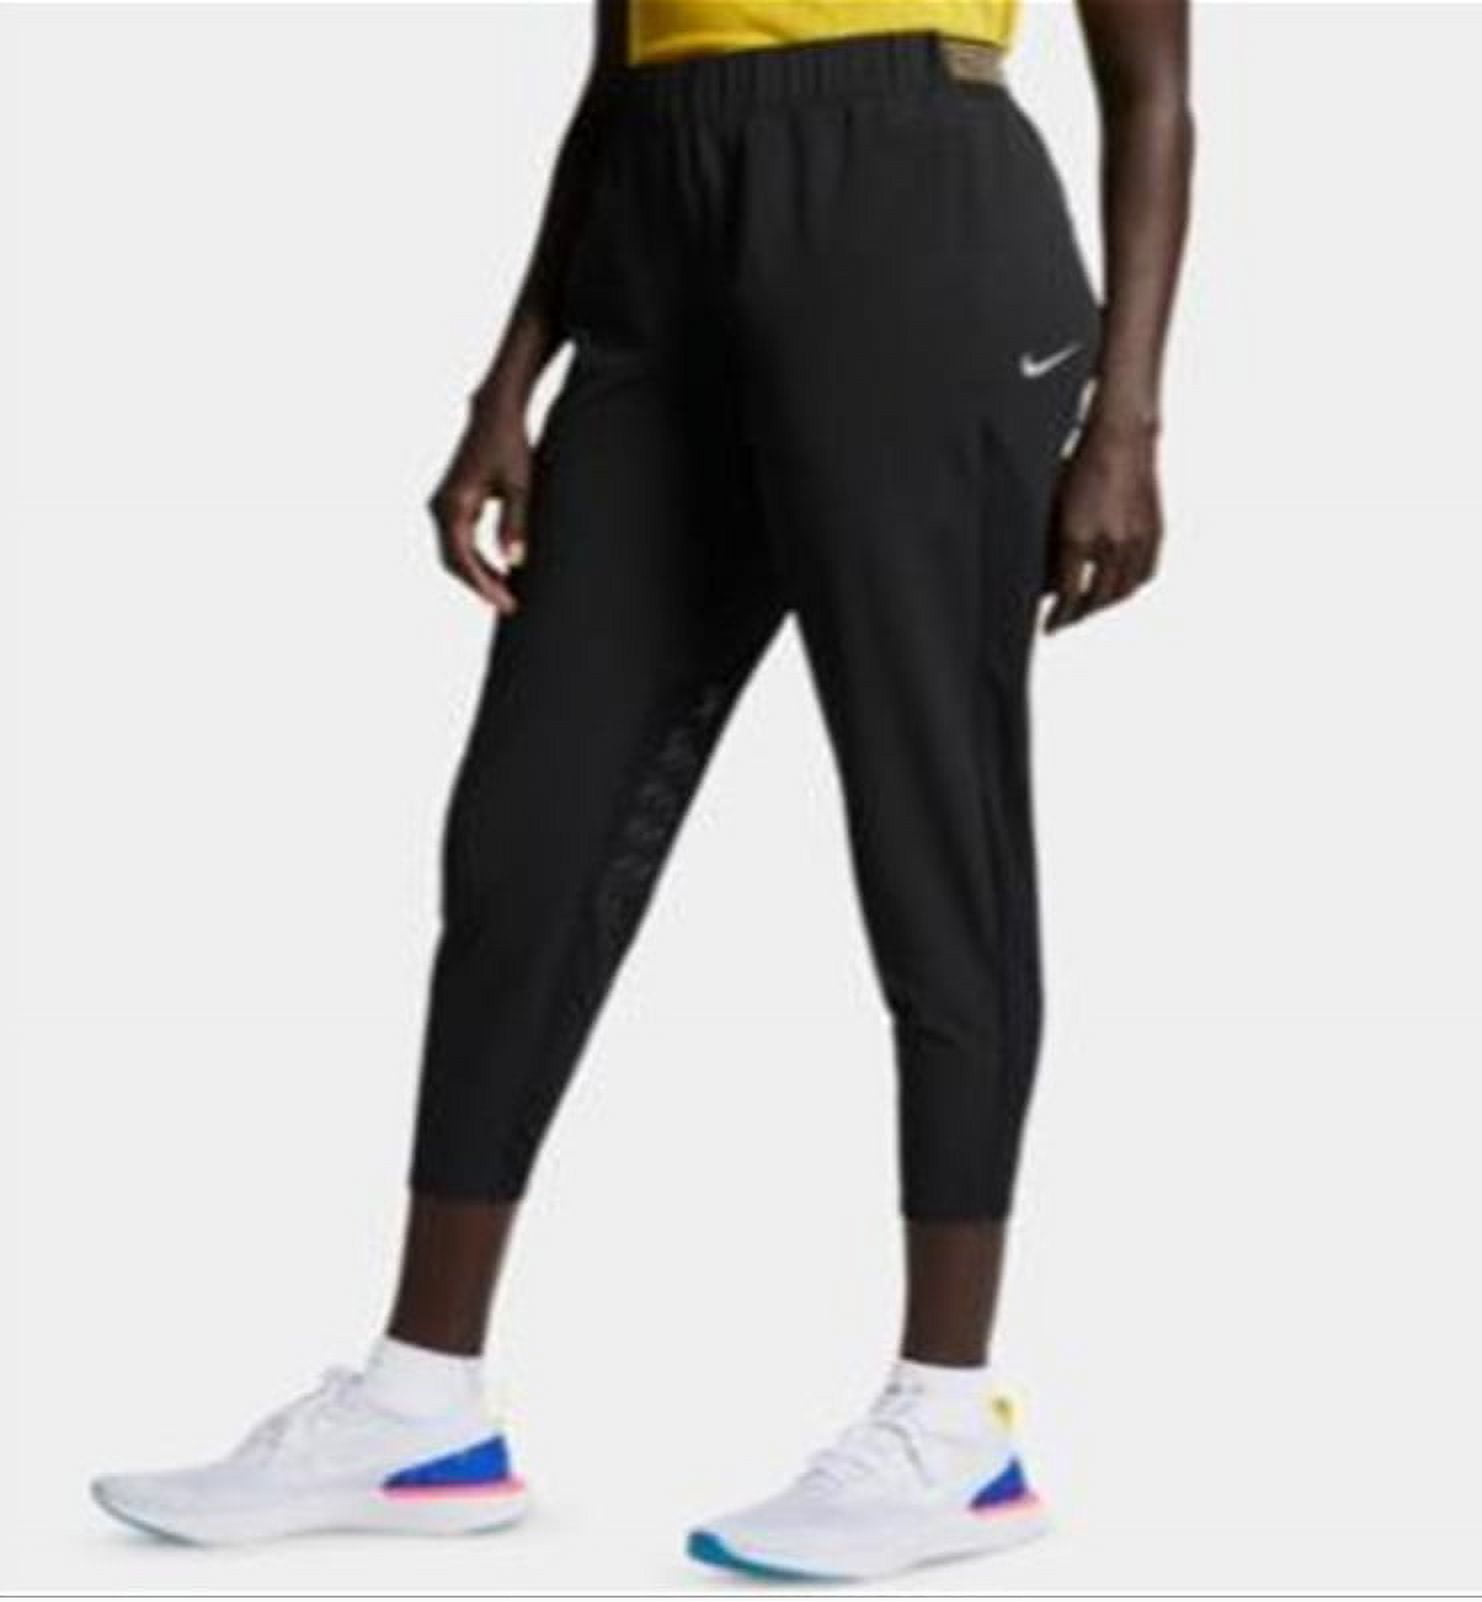 Nike Women's Dri fit Flex Essential Running Pants Black Size X-Small 